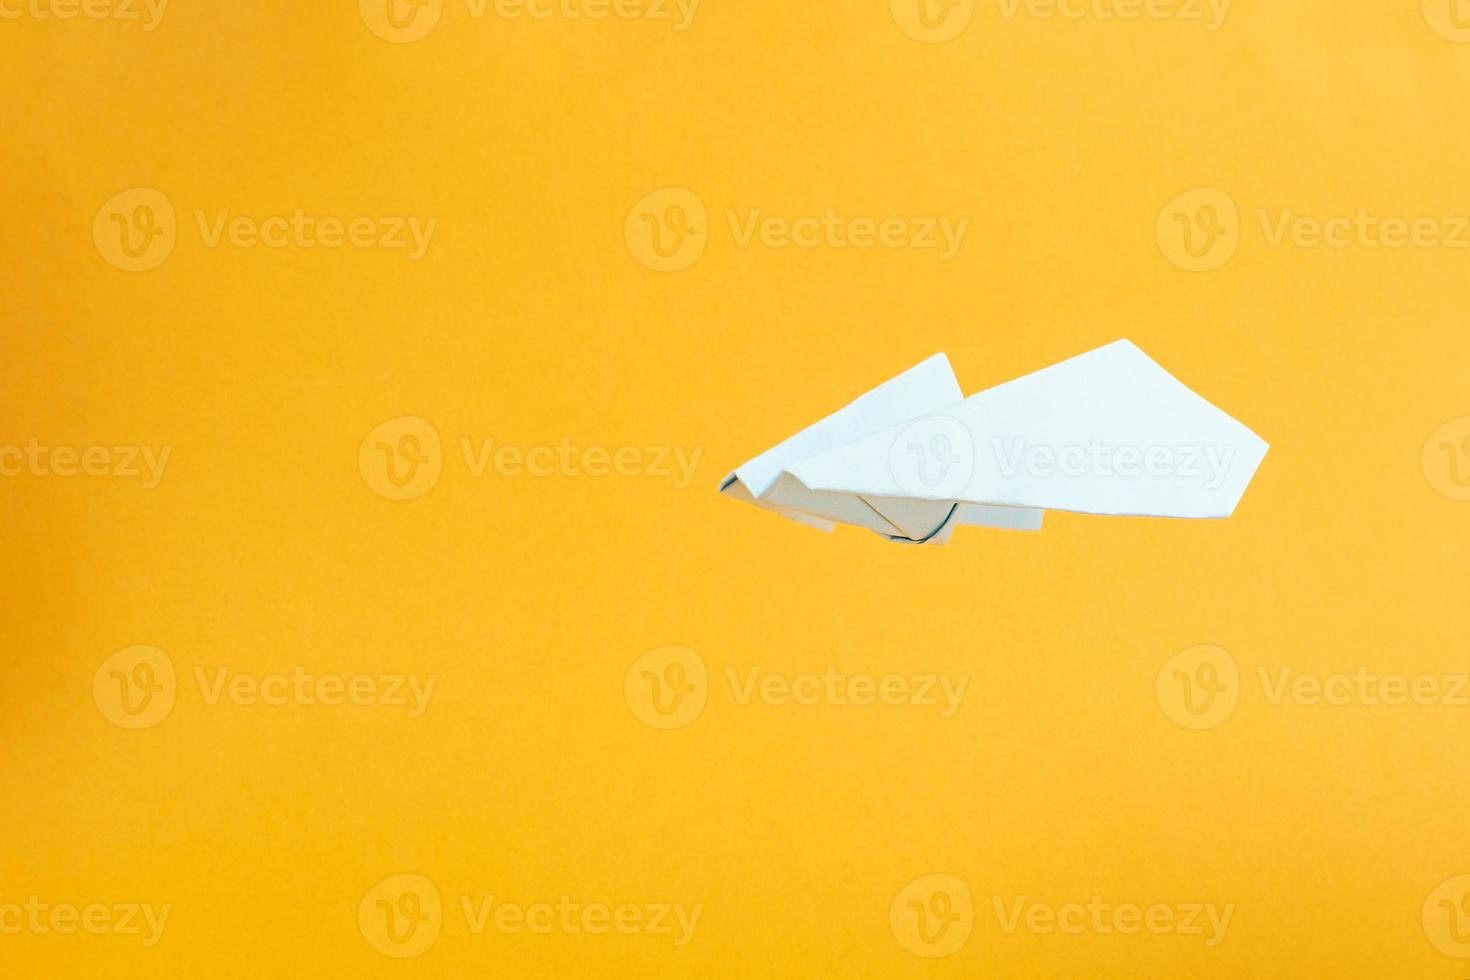 vitbok flygplan flyger på gul bakgrund koncept flygningar och resor foto